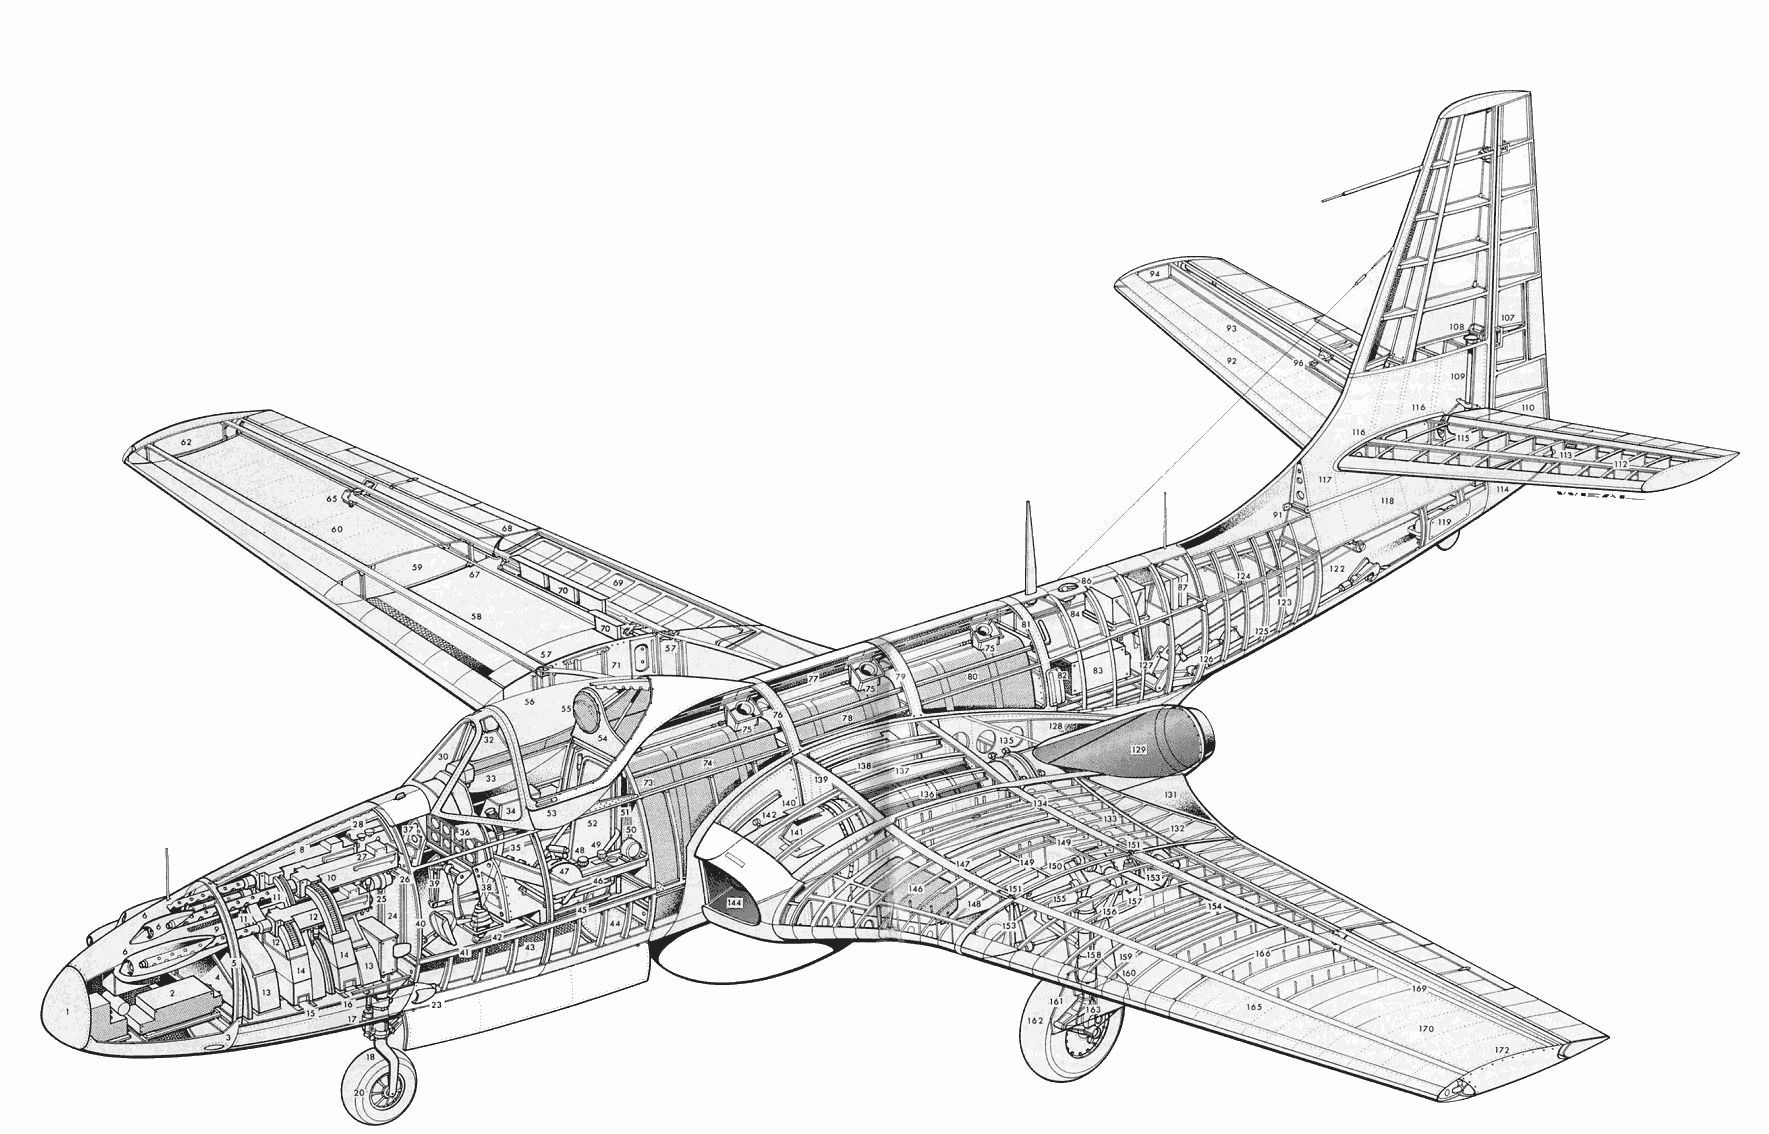 McDonnell FH Phantom cutaway drawing